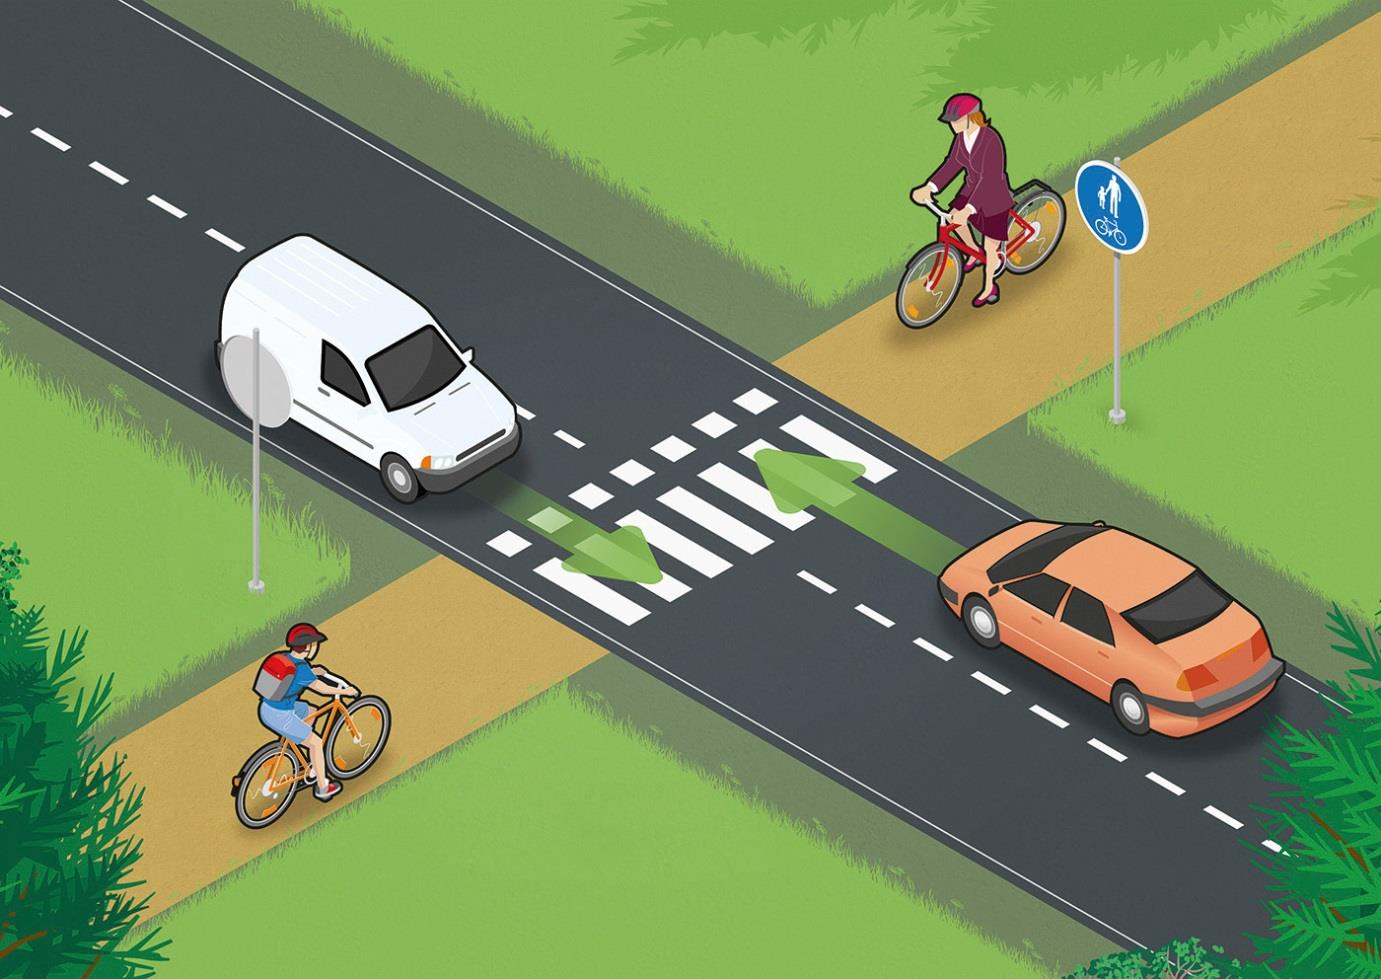 2 fortlöpande förbättra infrastrukturens säkerhet. Programmet för främjande av cykling innehåller allmänna riktlinjer för detta.